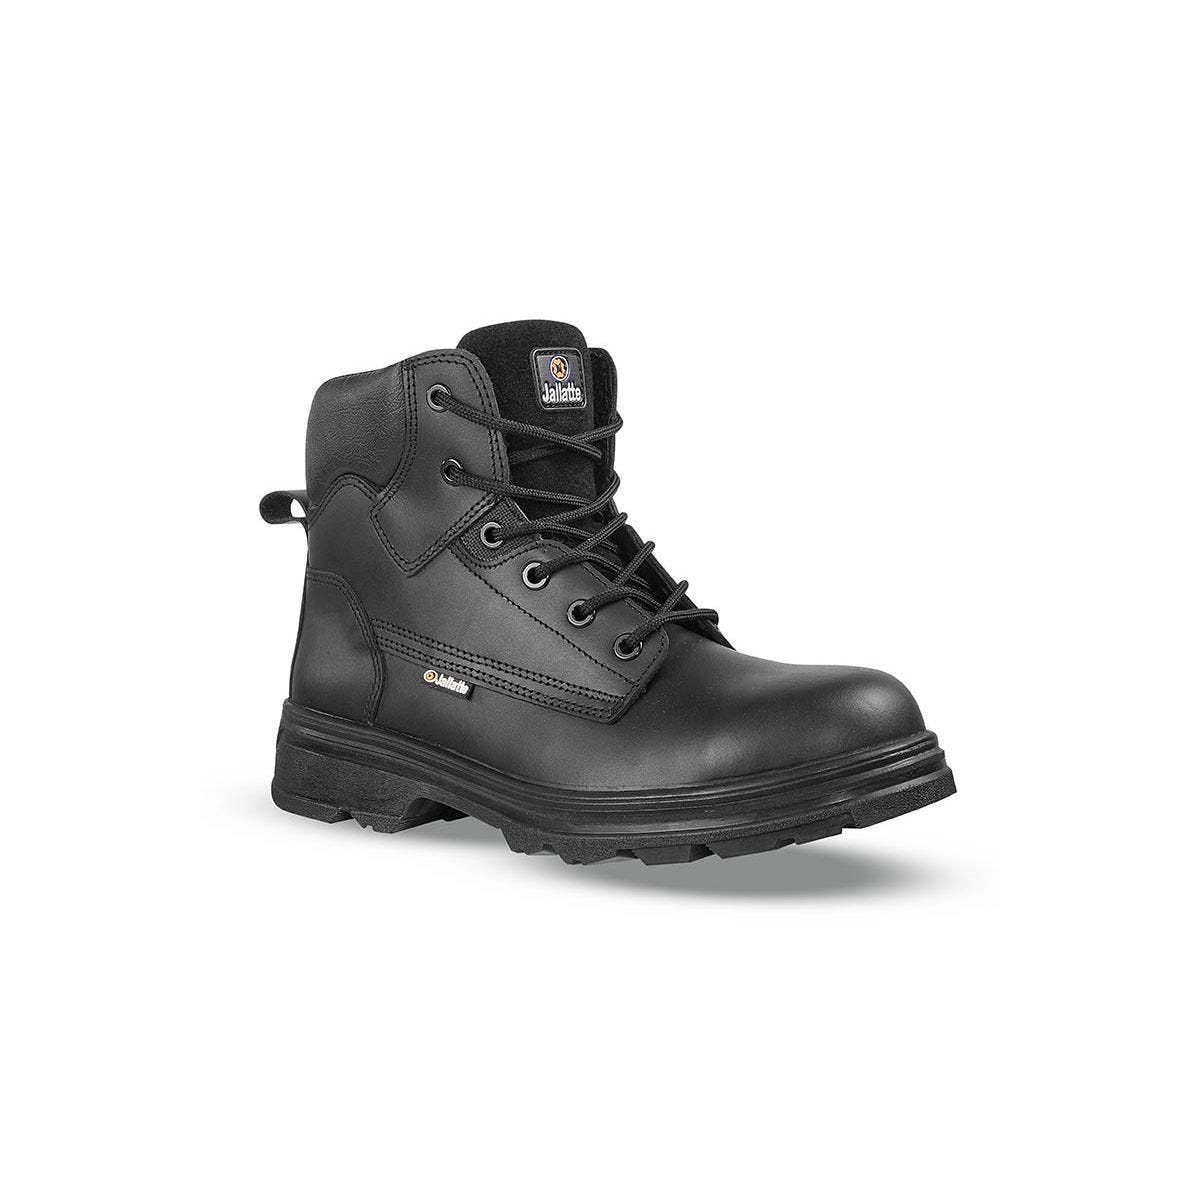 Chaussures de sécurité hautes JALGERAINT S3 - JALLATTE - Taille 43 0